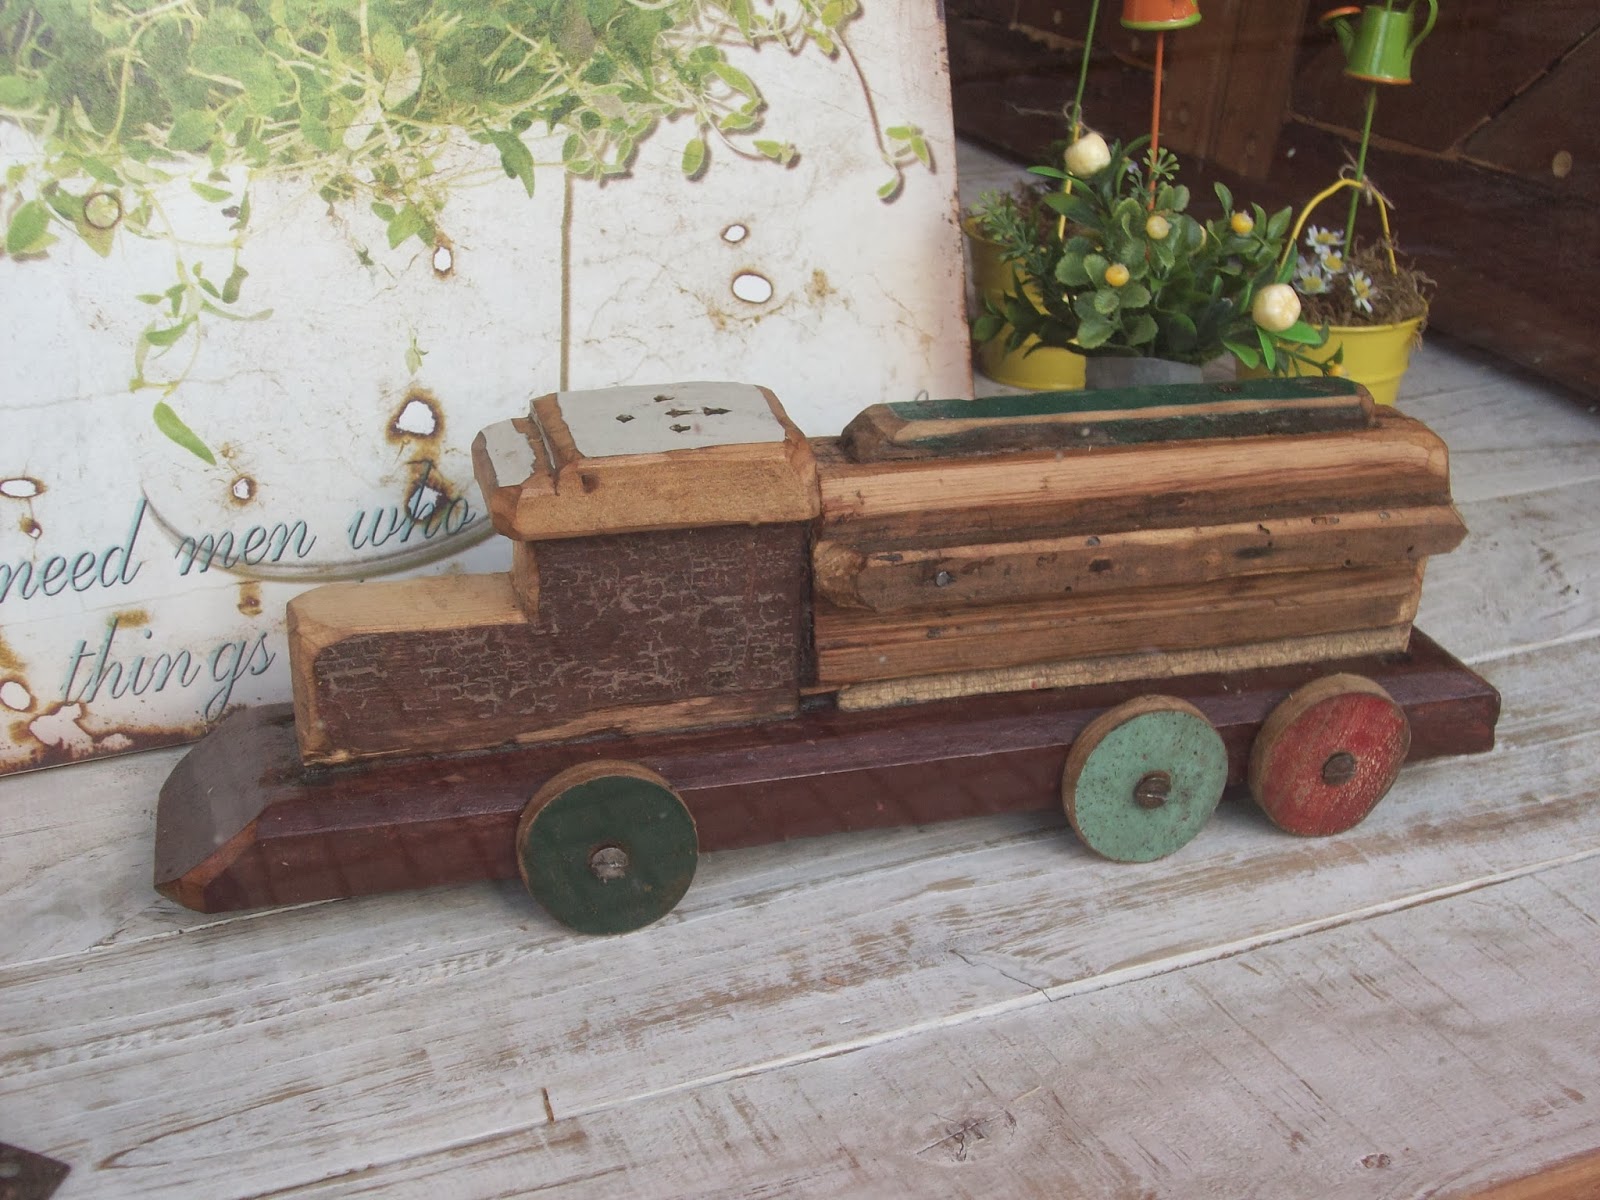 Grant Umeki Penmanship cativartee: Carrinhos de madeira artesanal do Uruguay